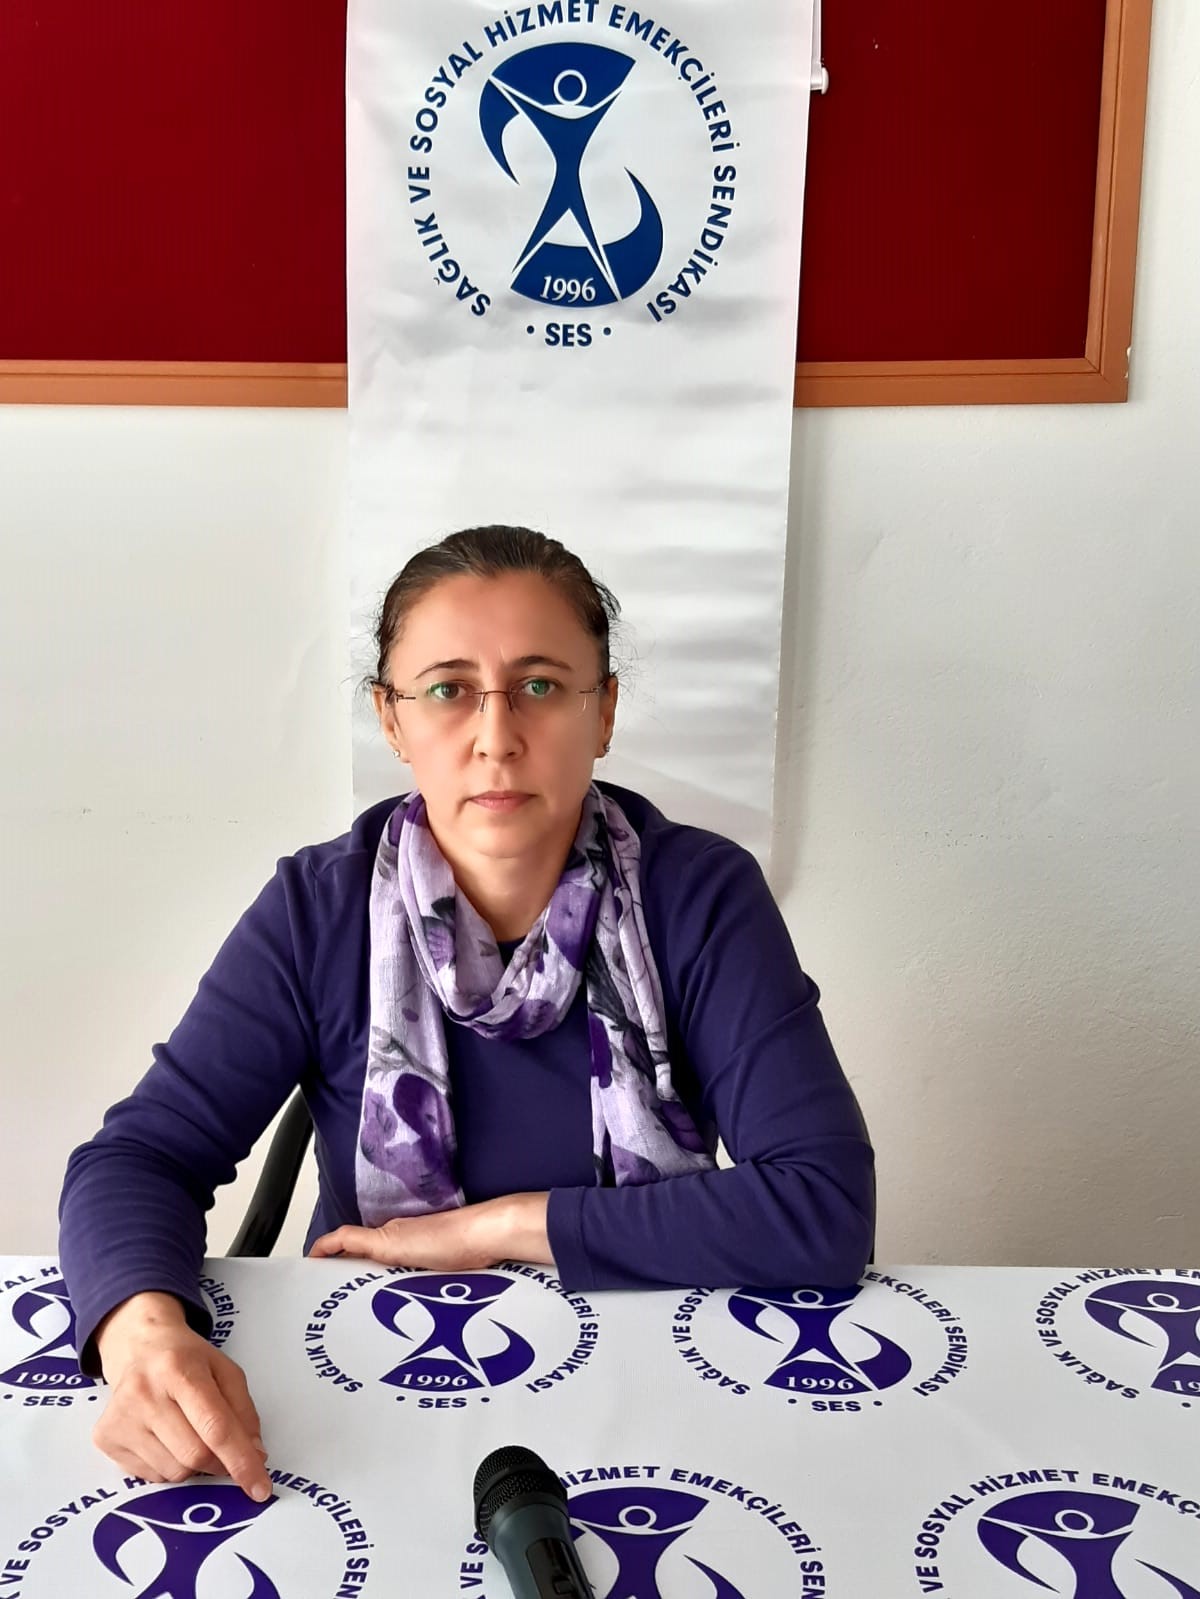 Antalya Şubemiz: Afla Cezaevlerinden Çıkanlara Ciddi Bir Sağlık Kontrolü Yapılmadığı ve Karantina Zorunluluğu Getirilmediği Anlaşılıyor!